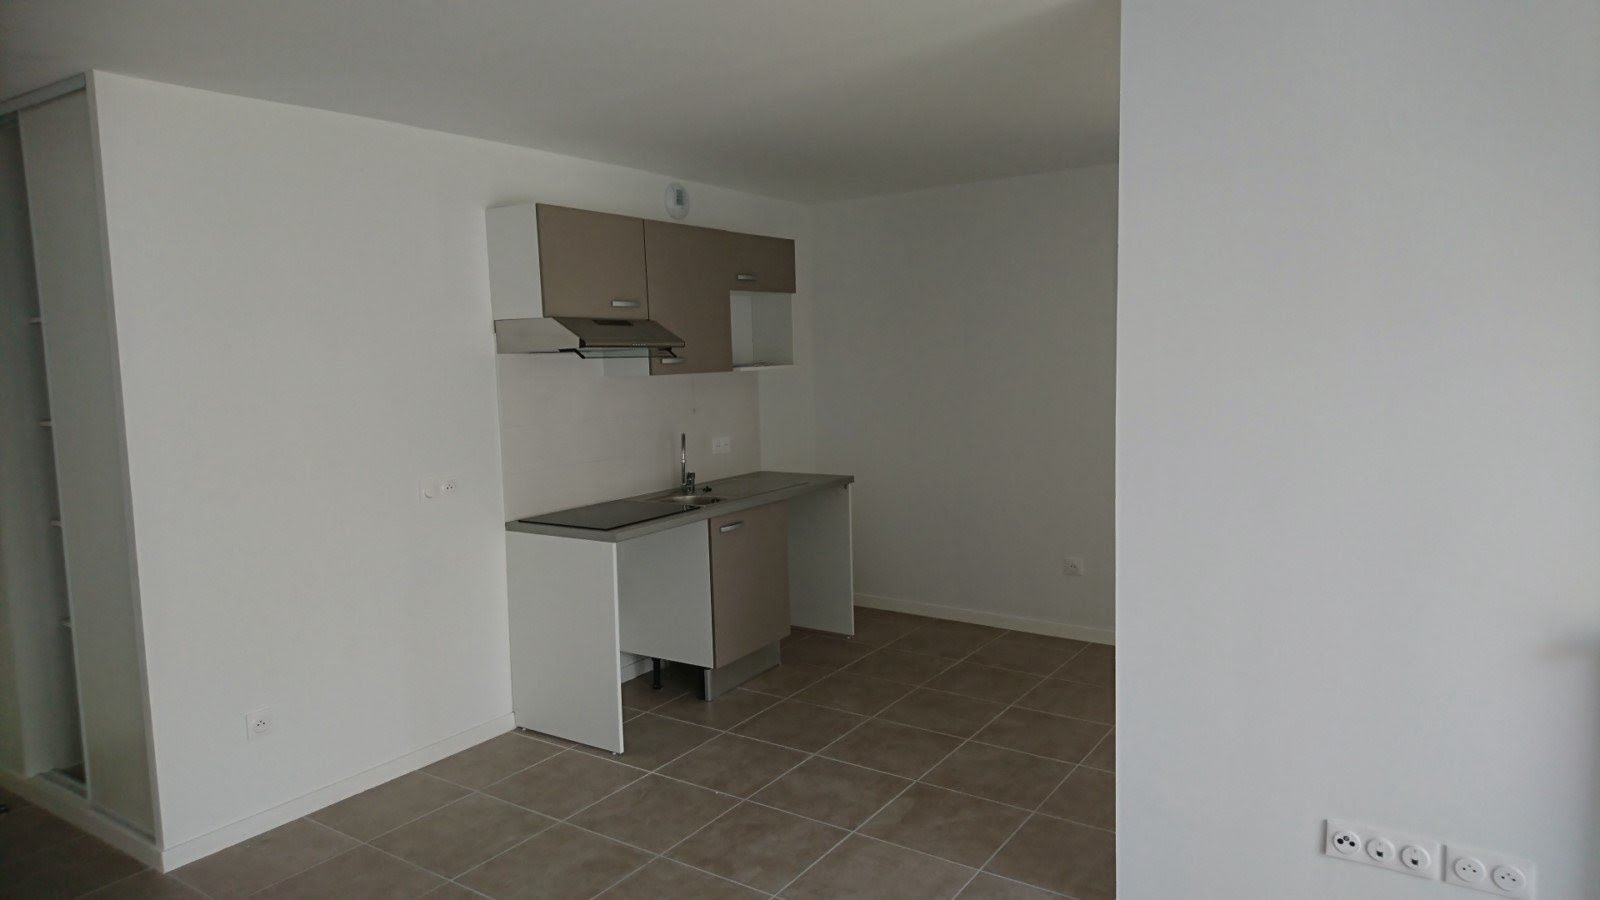 Location appartement 3 pièces 69,23 m2